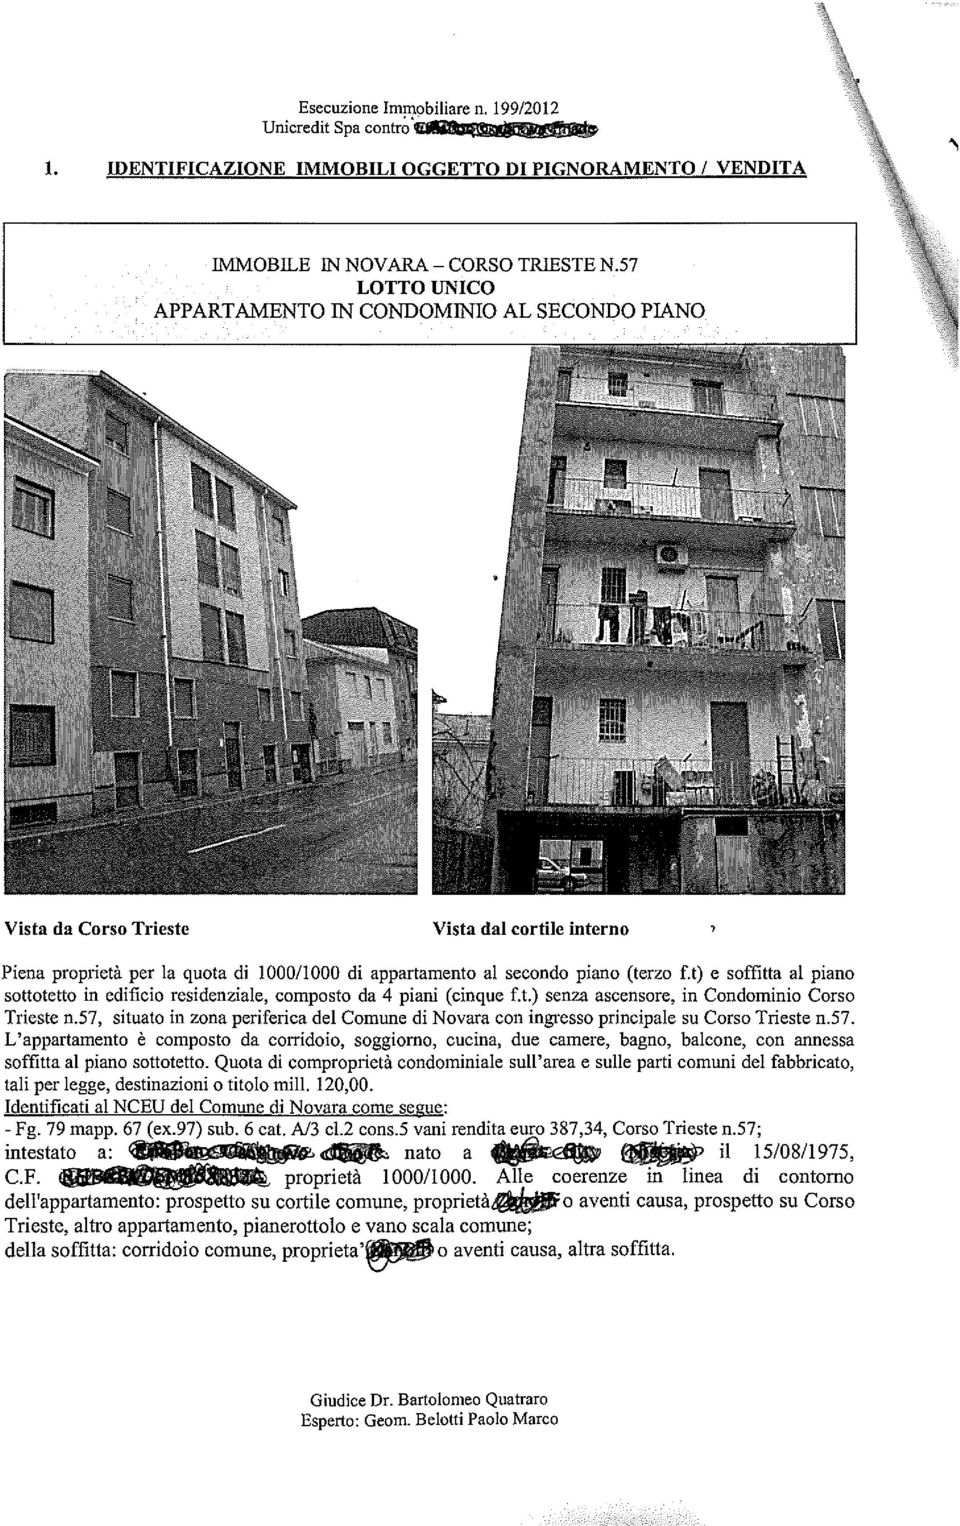 t) e soffitta al piano sottotetto in edificio residenziale, composto da 4 piani (cinque f.t.) senza ascensore, in Condominio Corso Trieste n.